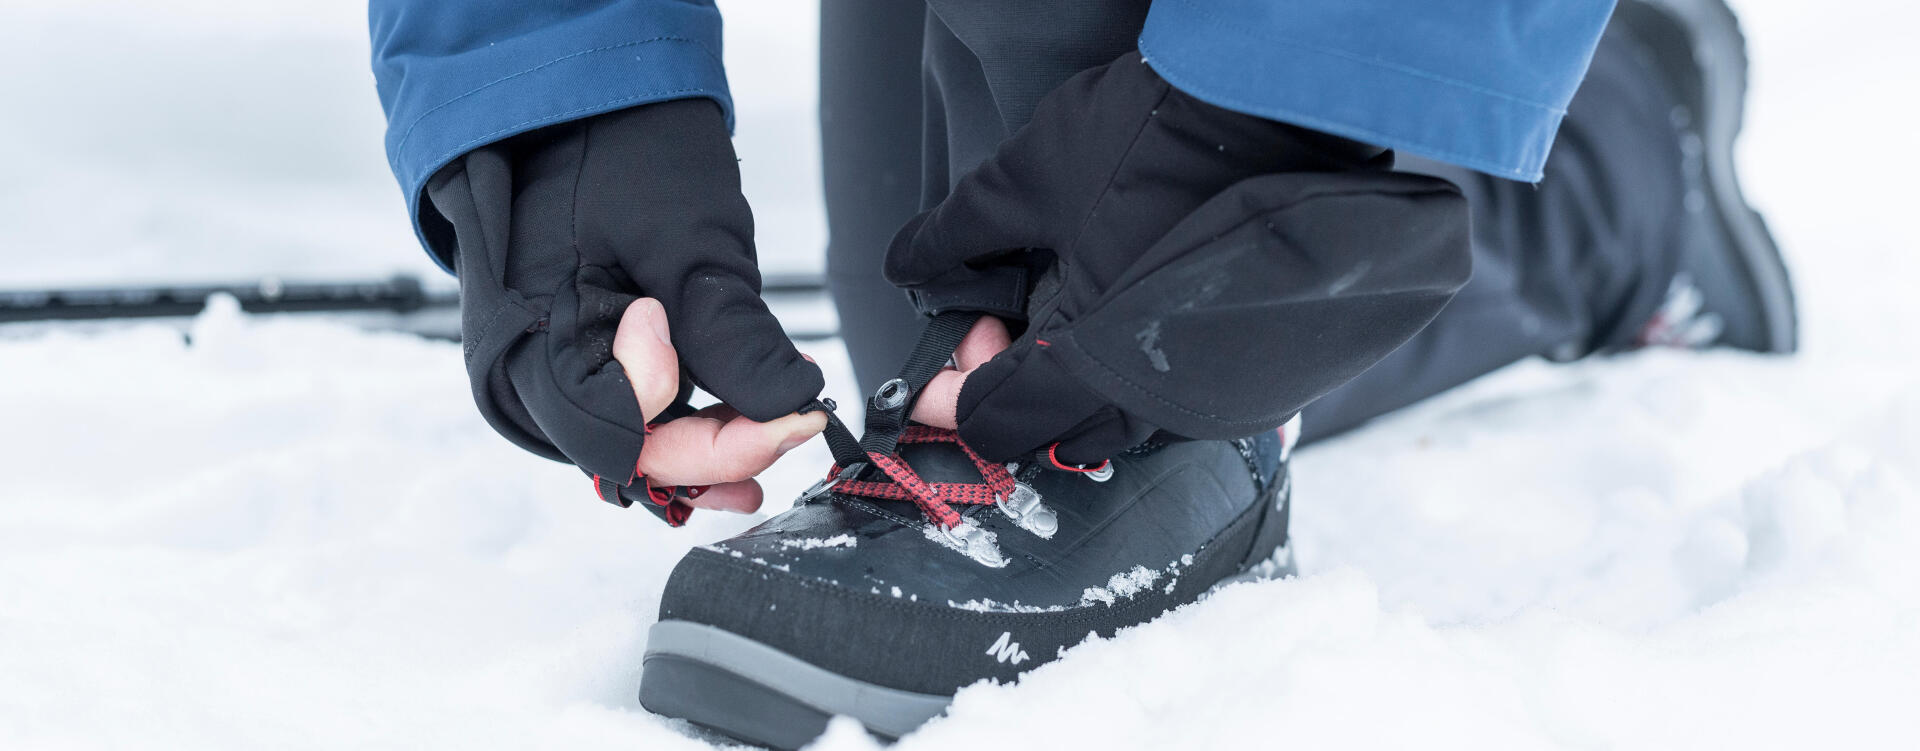 Scegliere bene le scarpe per fare escursioni in inverno | DECATHLON